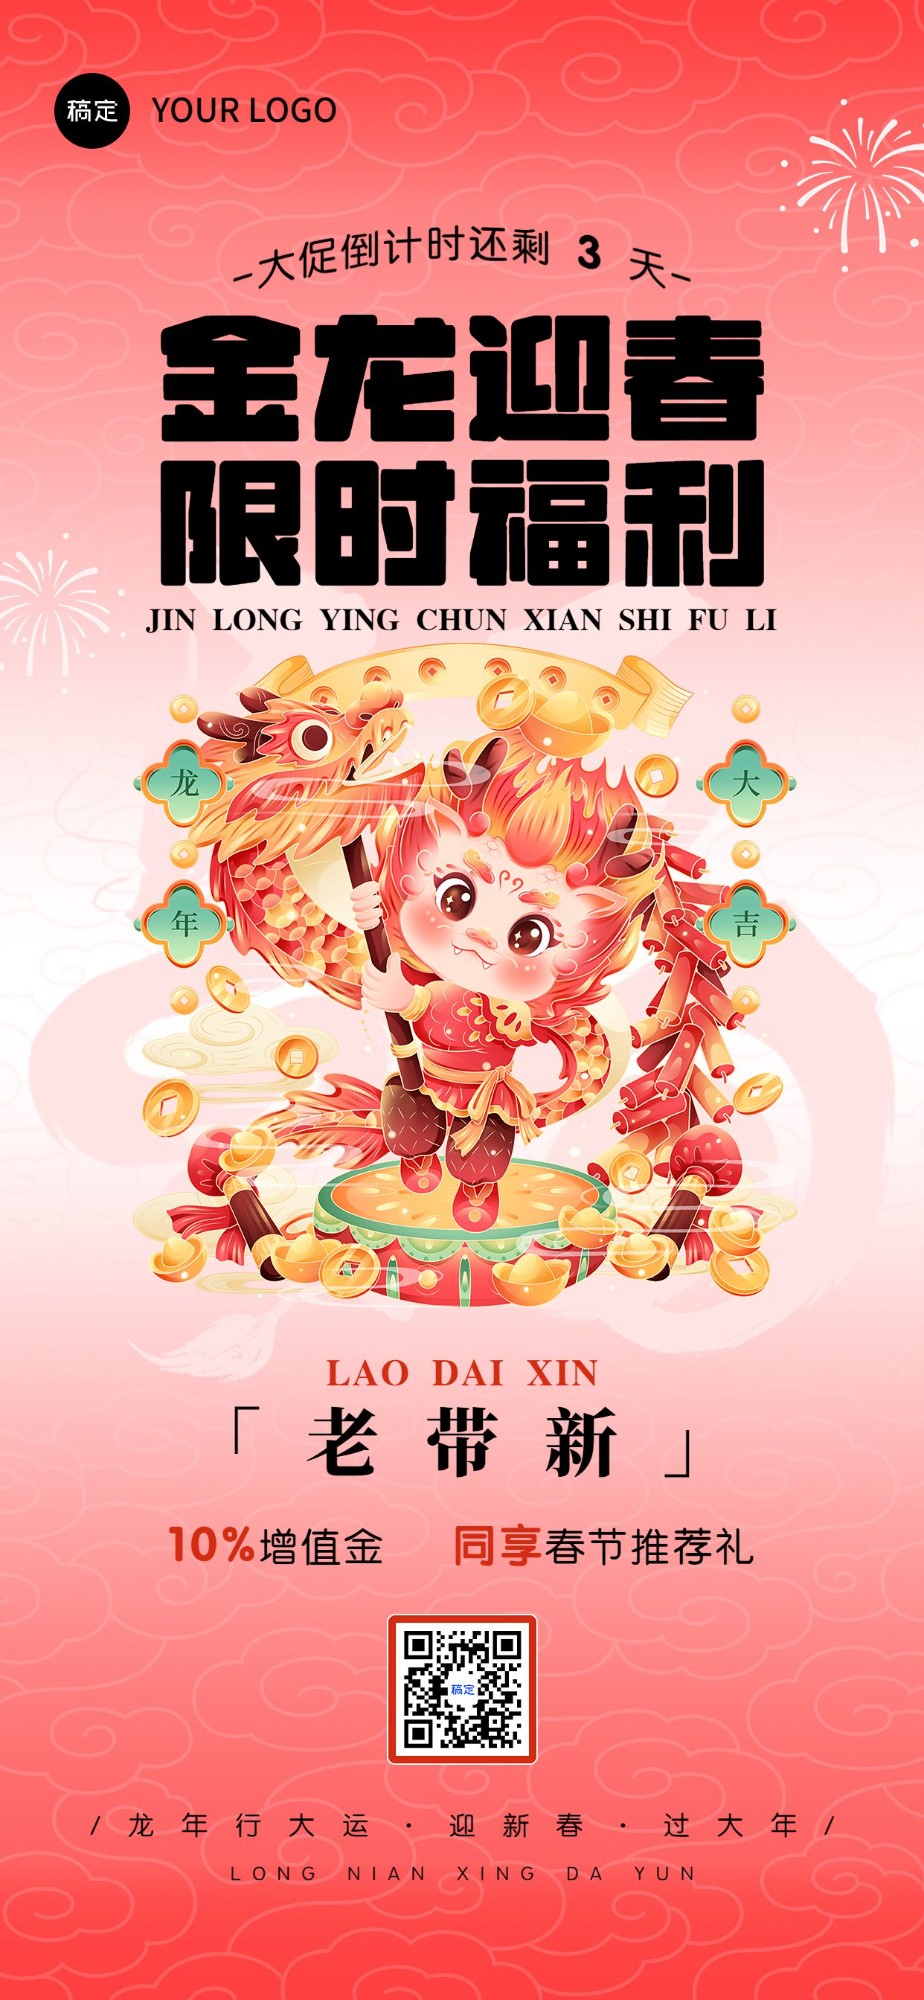 春节促销活动倒计时全屏竖版海报套系小龙人舞龙插画